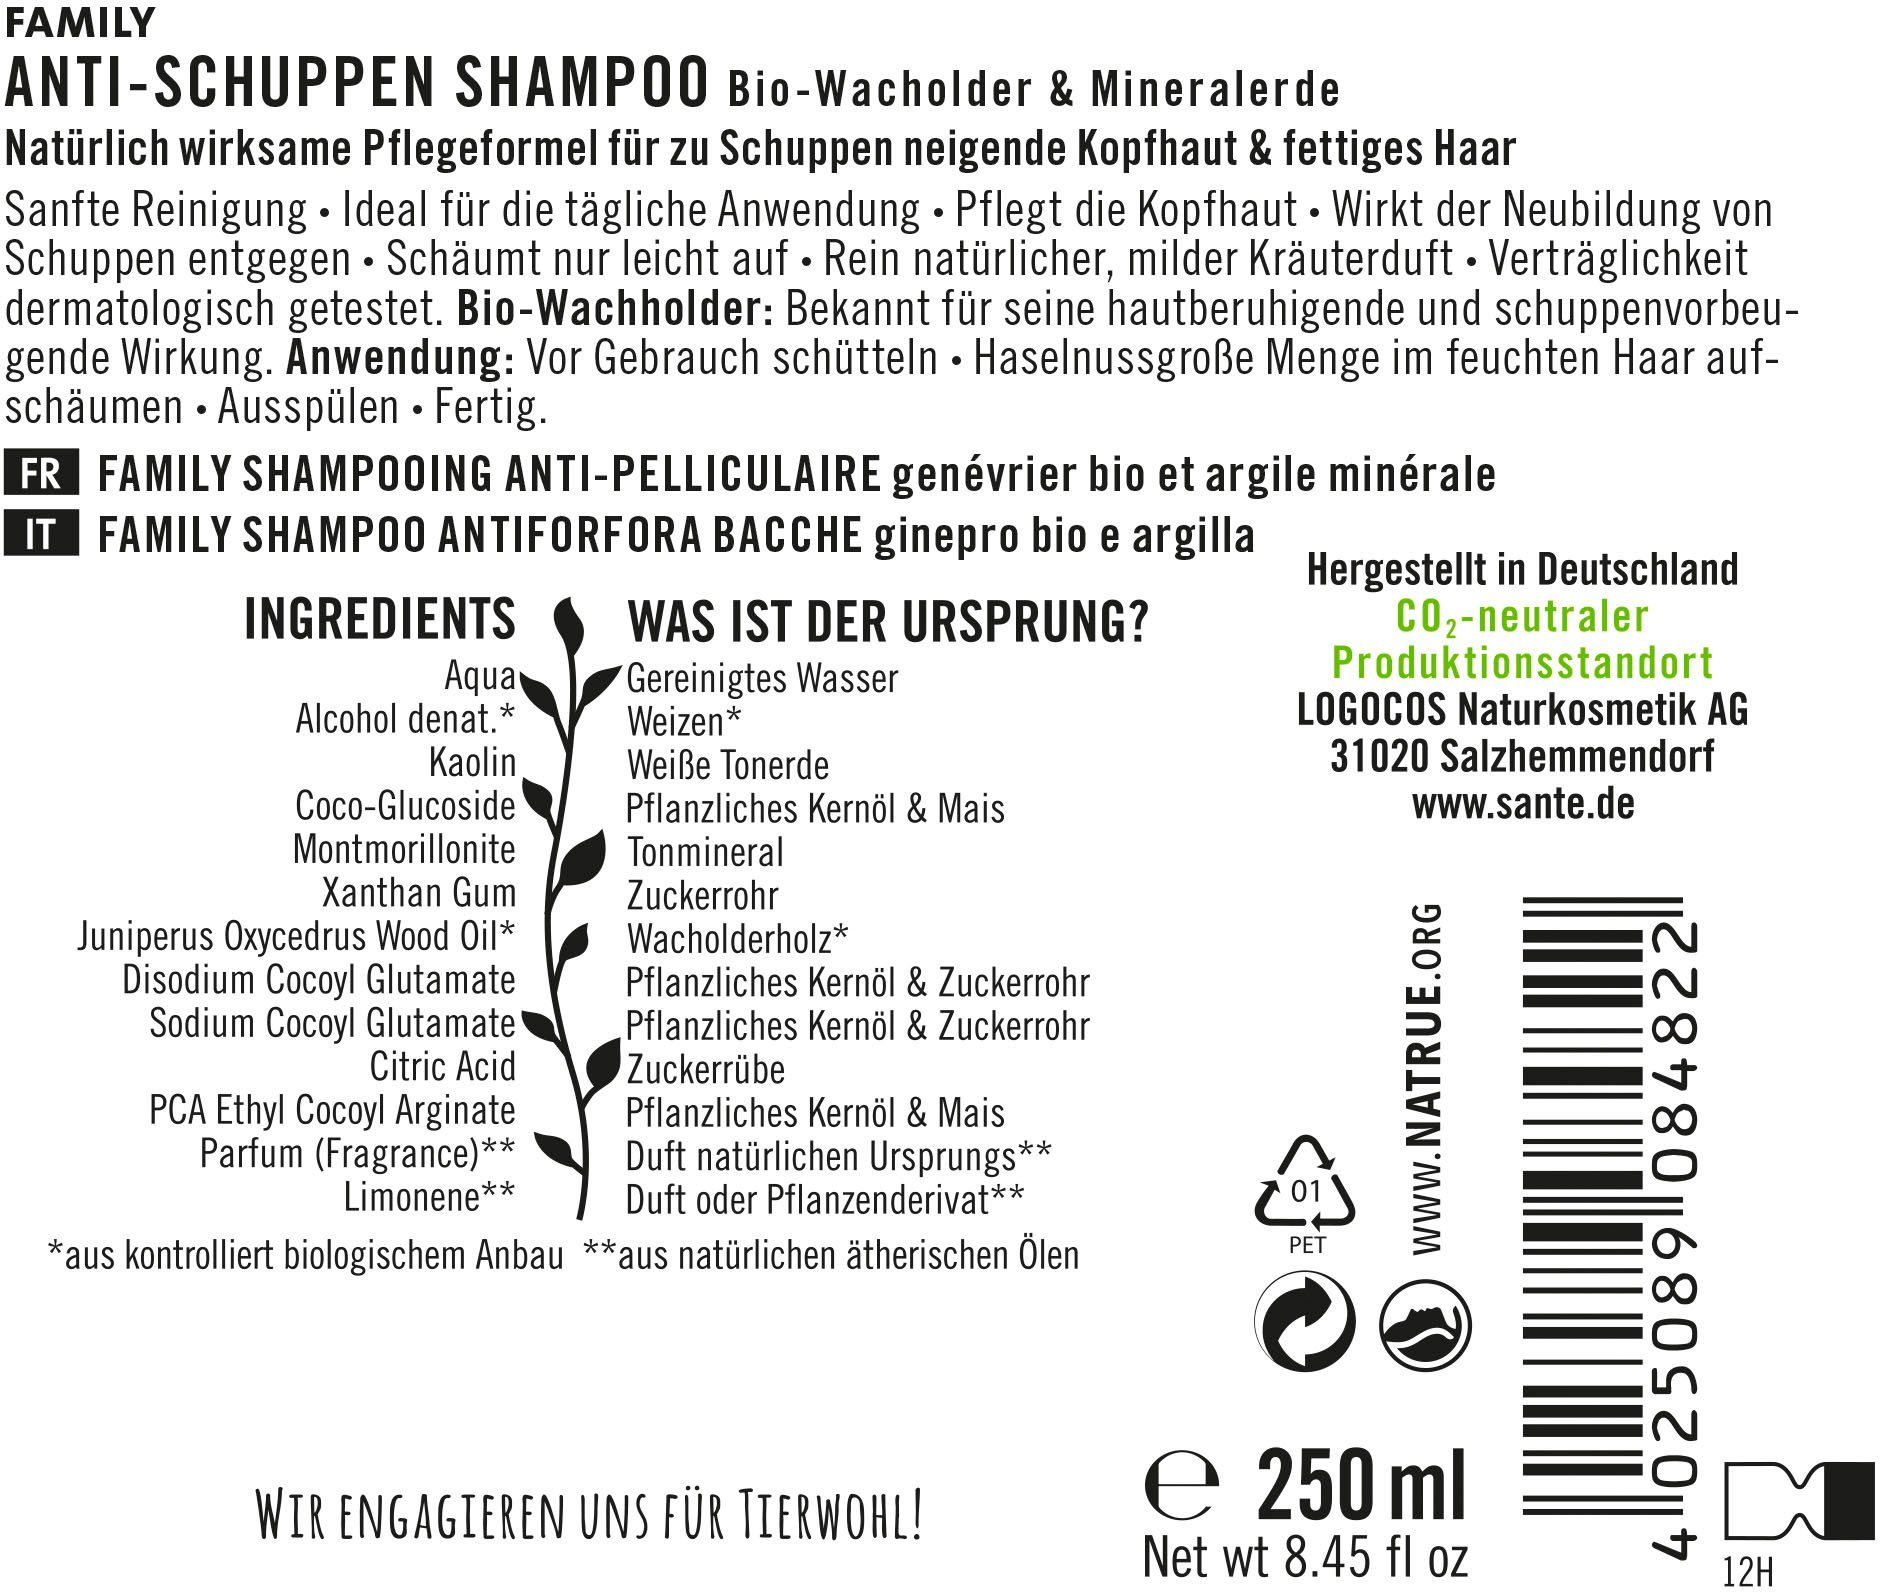 SANTE Haarshampoo FAMILY Anti-Schuppen Shampoo, Mit Kräuterduft natürlichem, milden rein